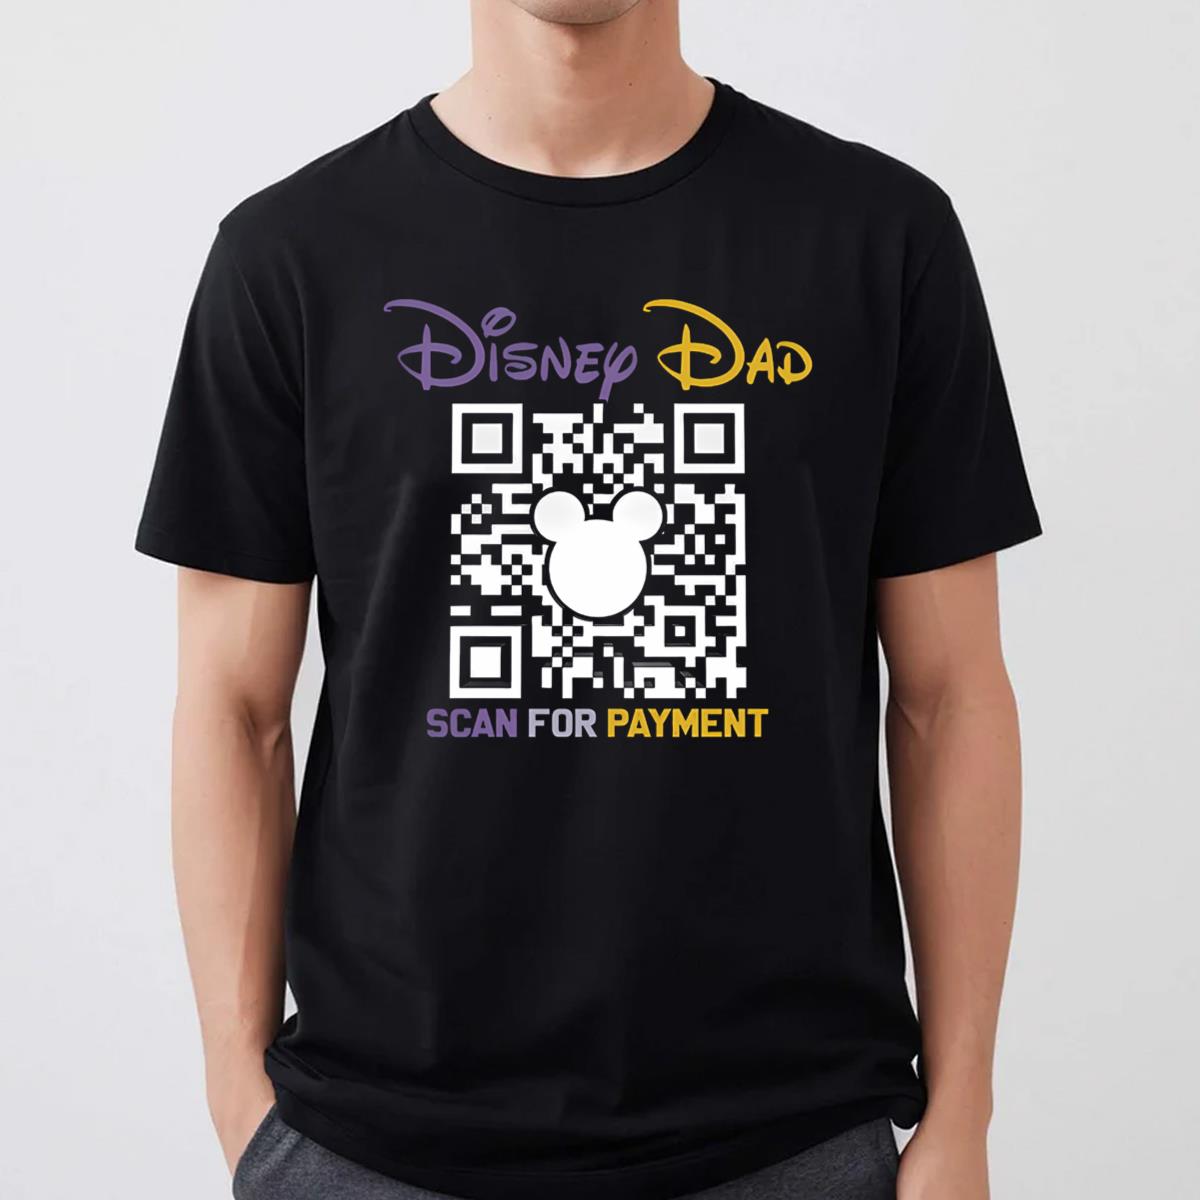 Disney Dad Shirt, Disney Dad Scan For Payment Shirt